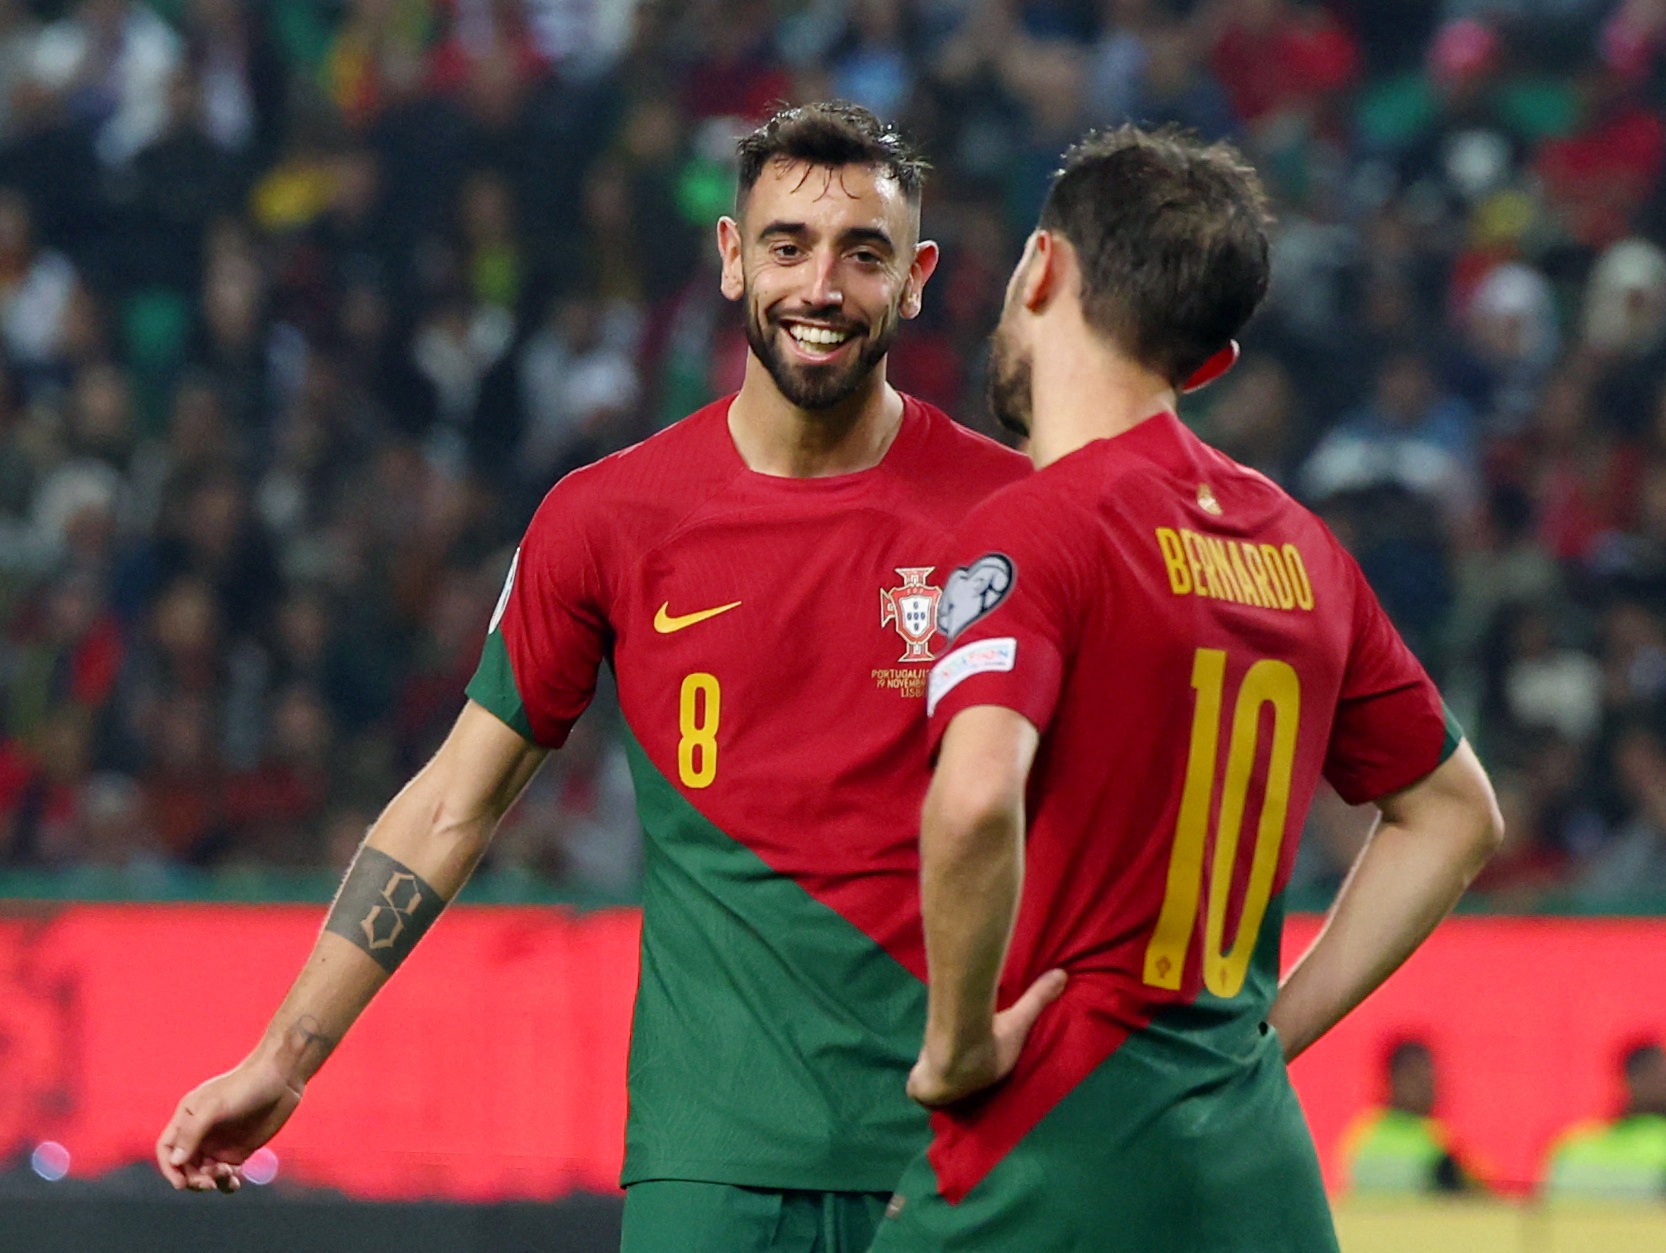 Portugal ganhou, mas marcou pouco para tantos avançados, Futebol